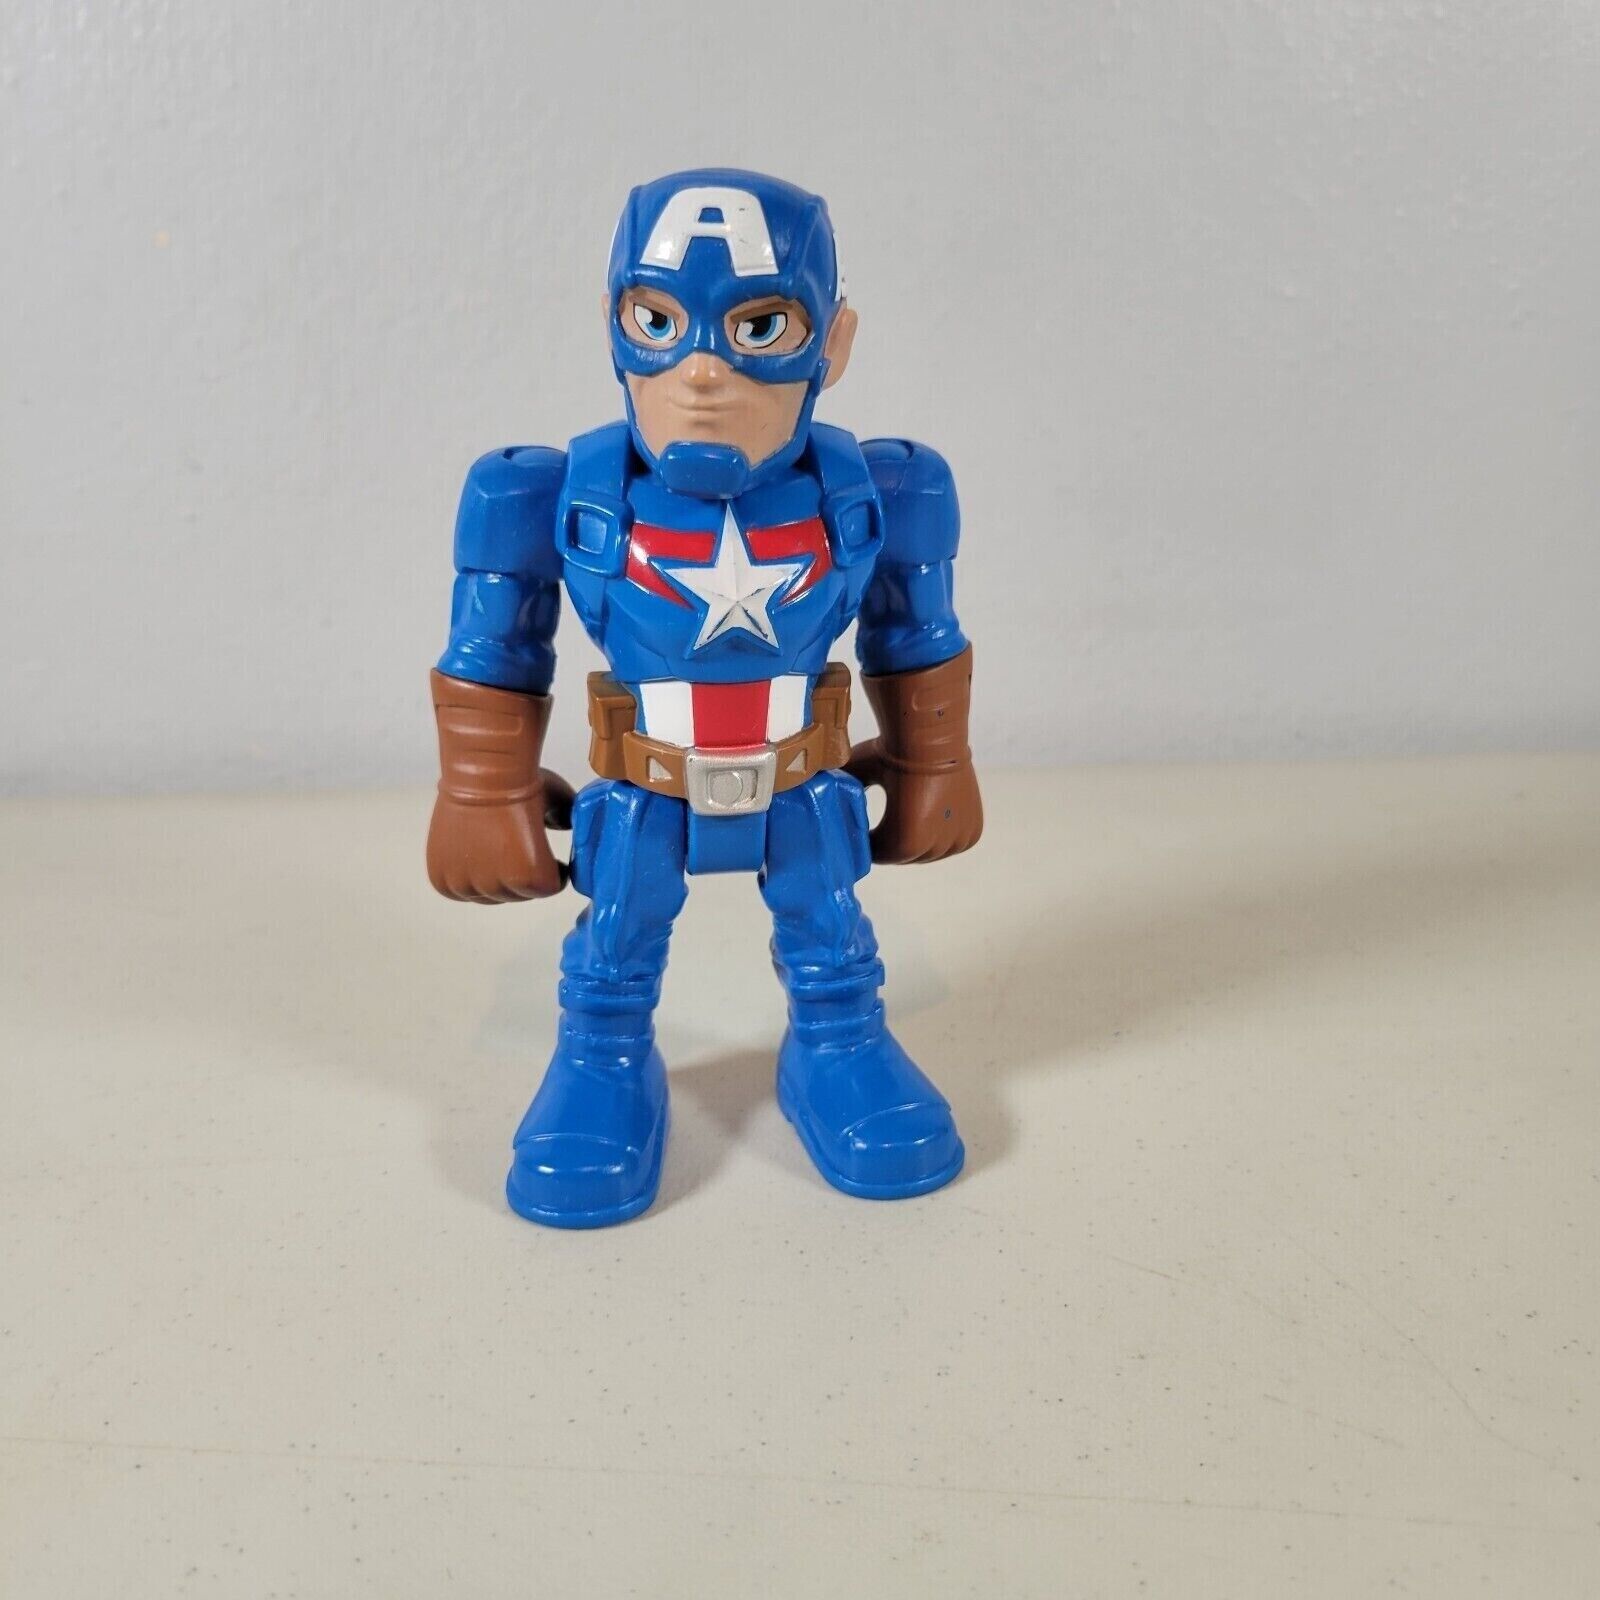 Playskool Mega Mighties Action Figure Marvel Captain America Size 5" 2018 - $9.98